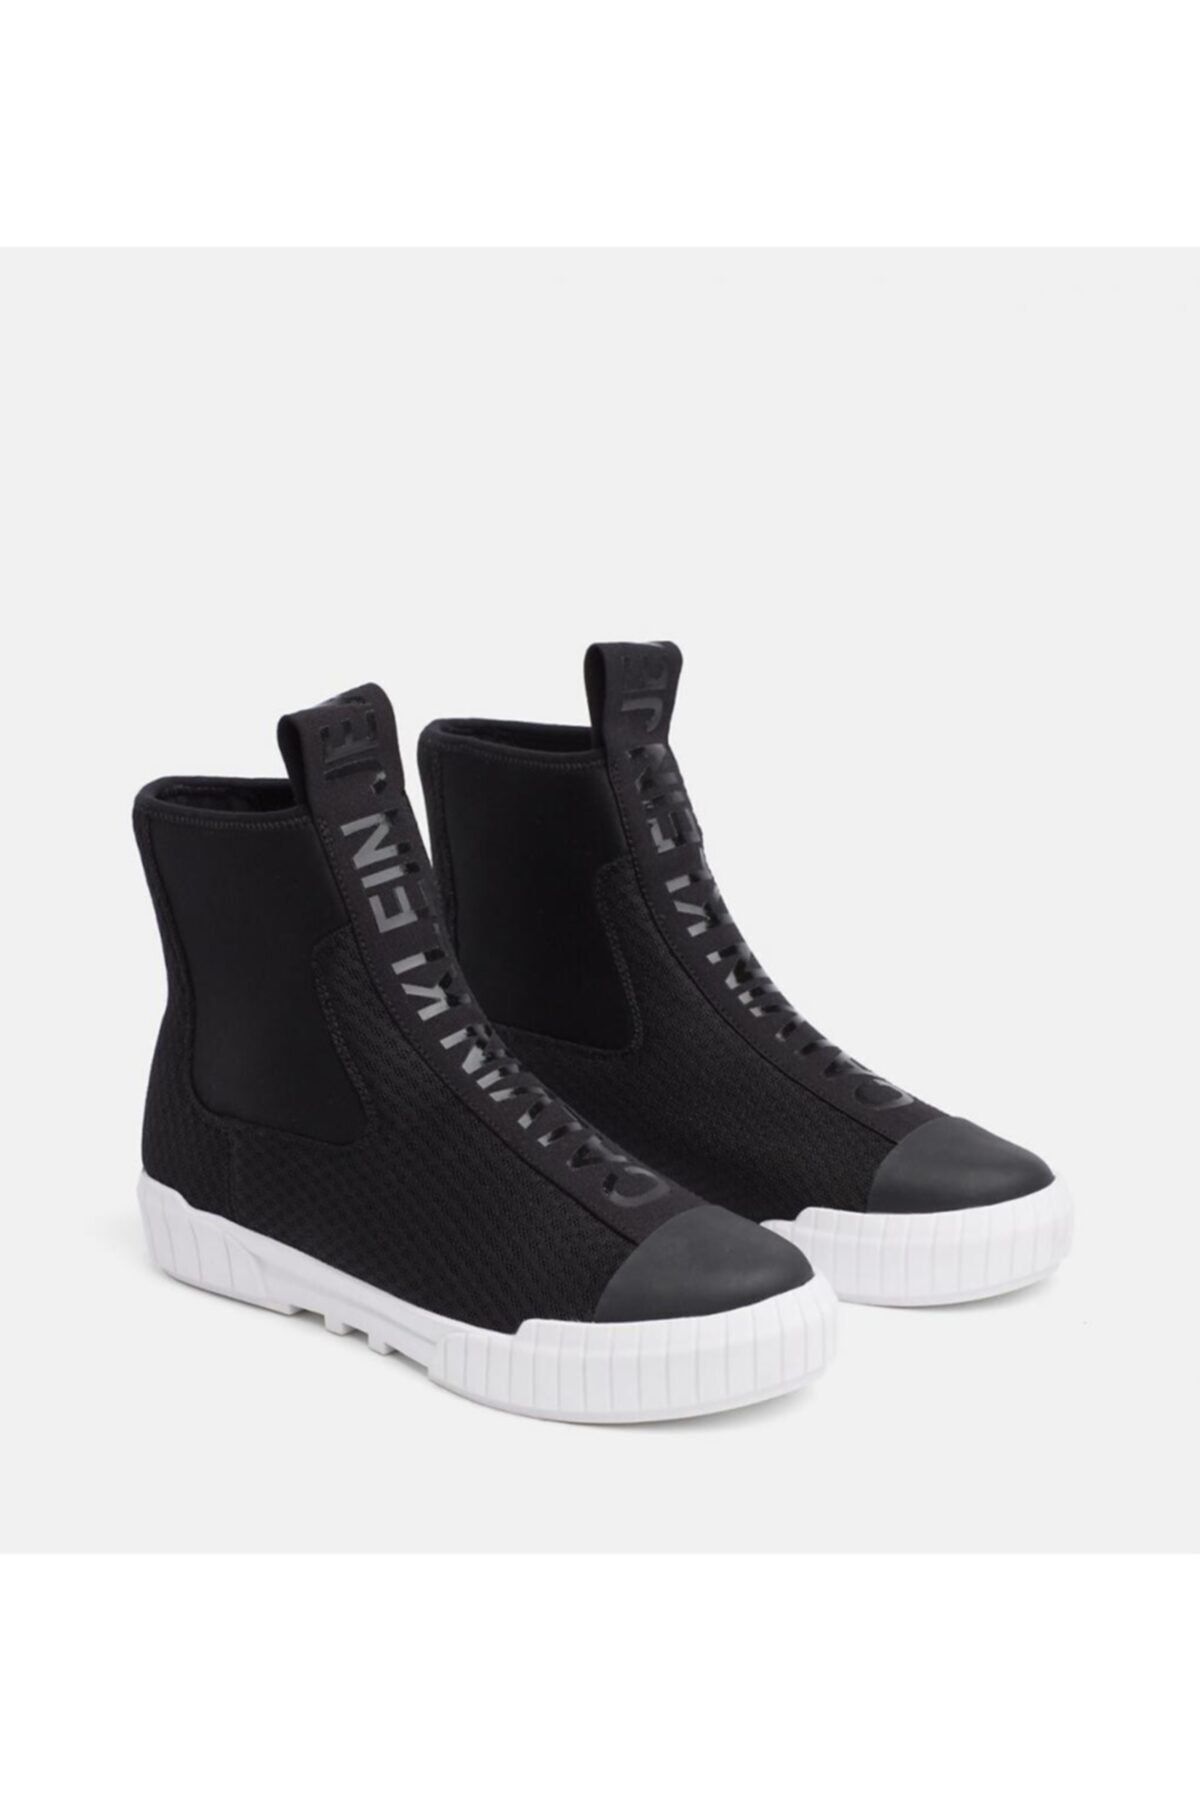 Calvin Klein Unisex Siyah Fileli Bot Ayakkabı